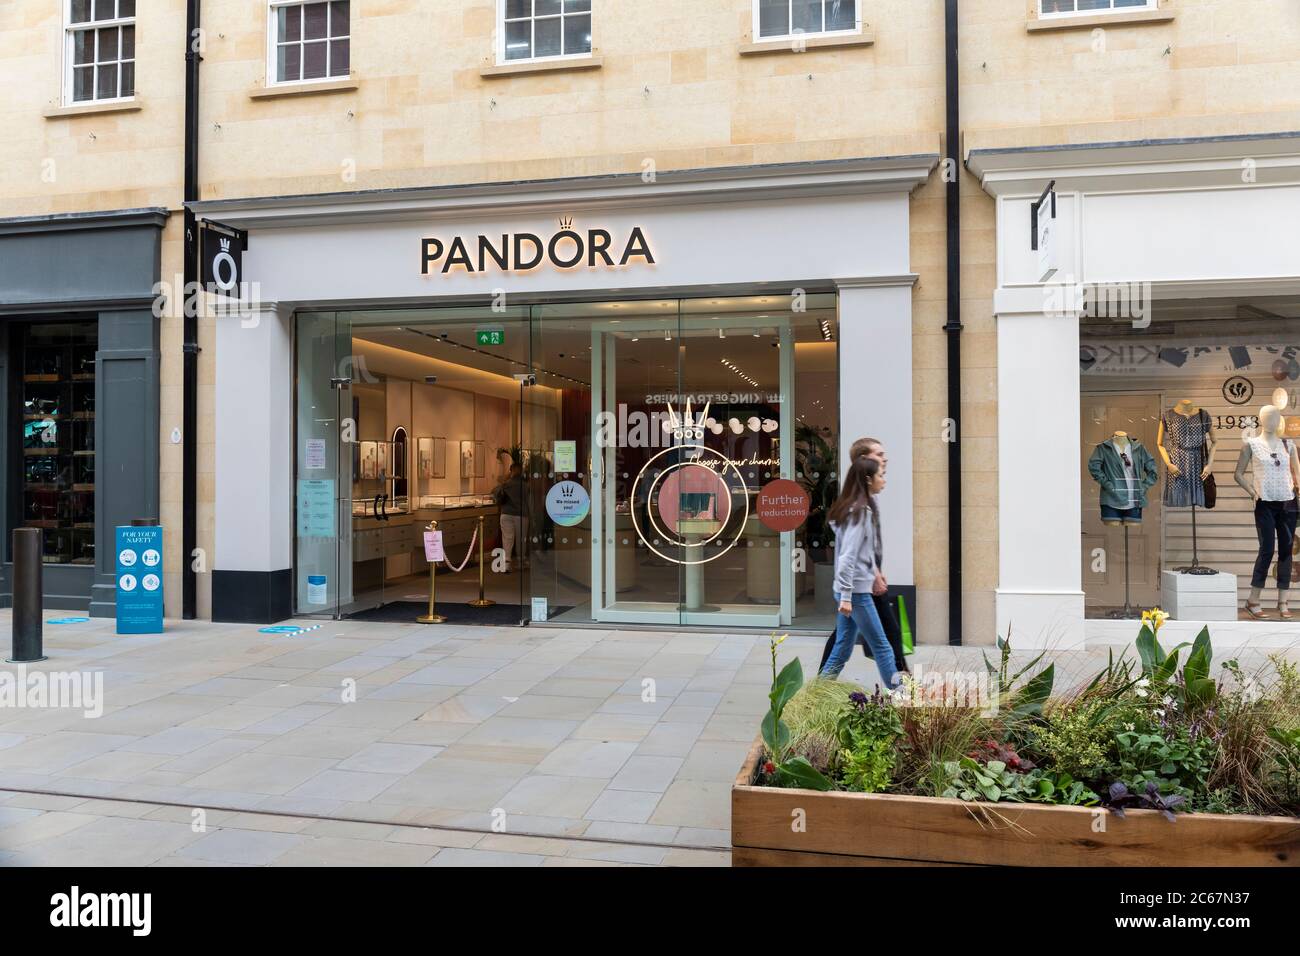 Nahaufnahme des Pandora-Geschäfts in der St Lawrence Street, Southgate, Bath, England, Großbritannien Stockfoto